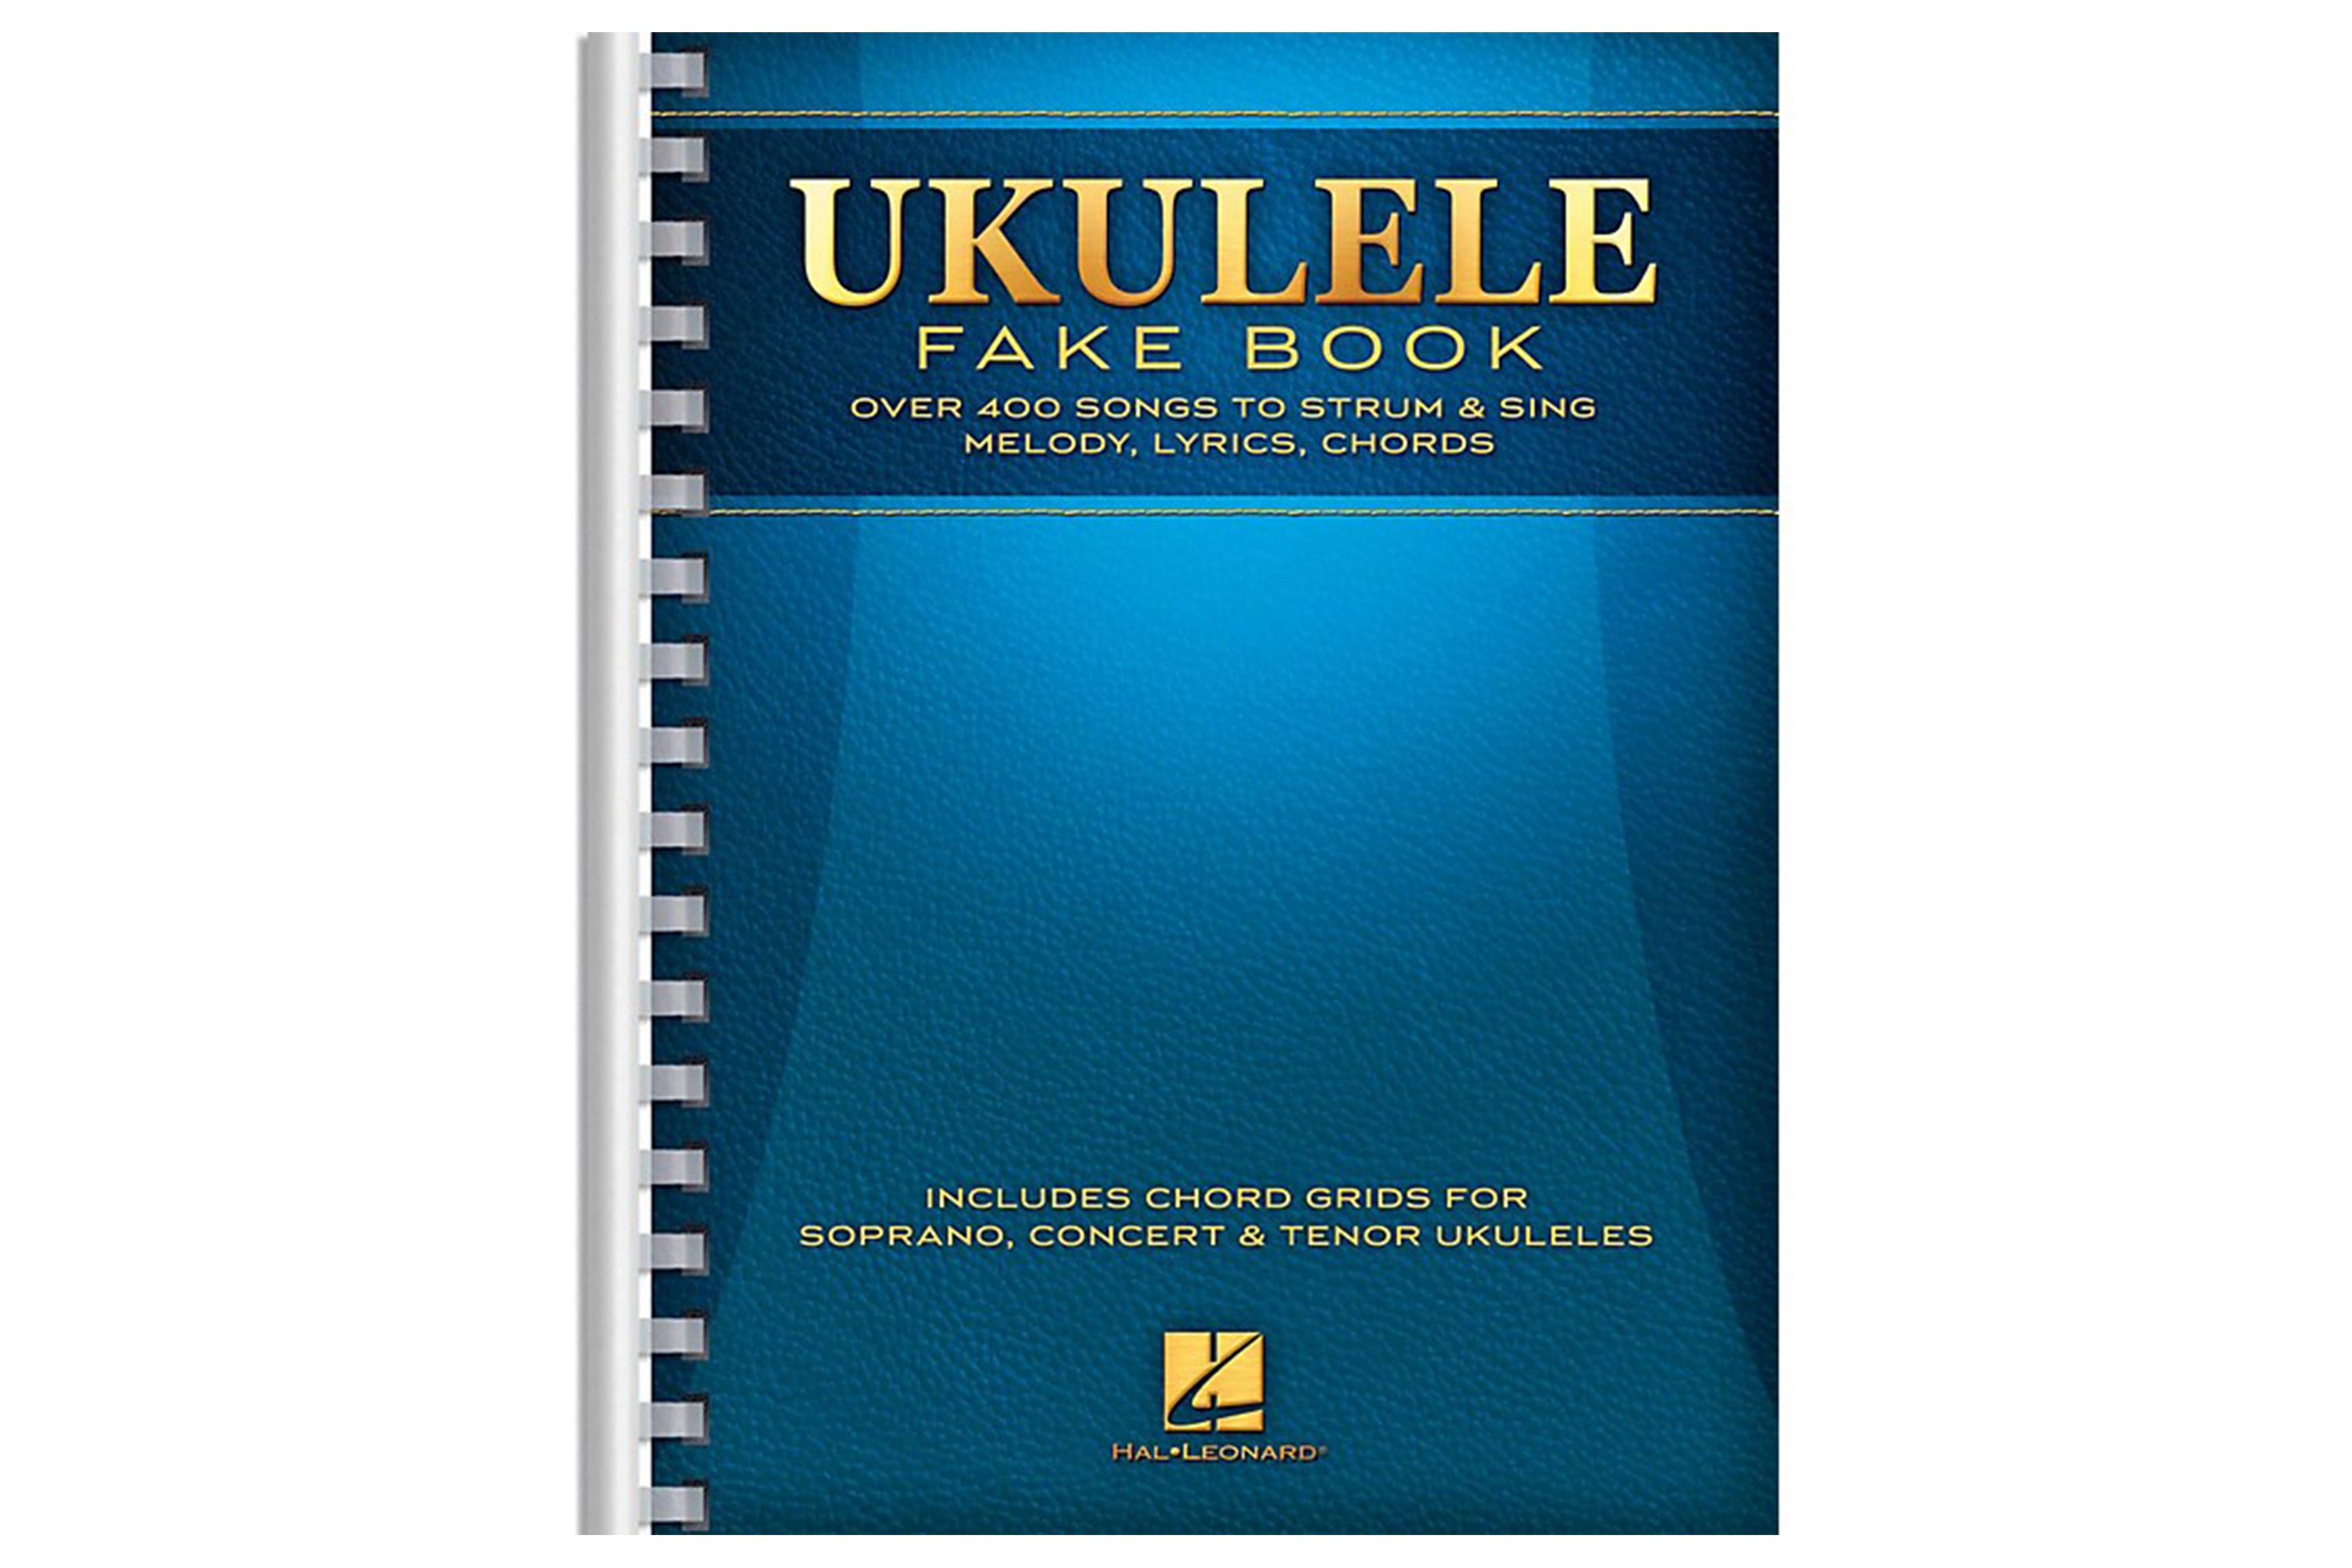 Ukulele Fake Book Travel Size - Terry Store